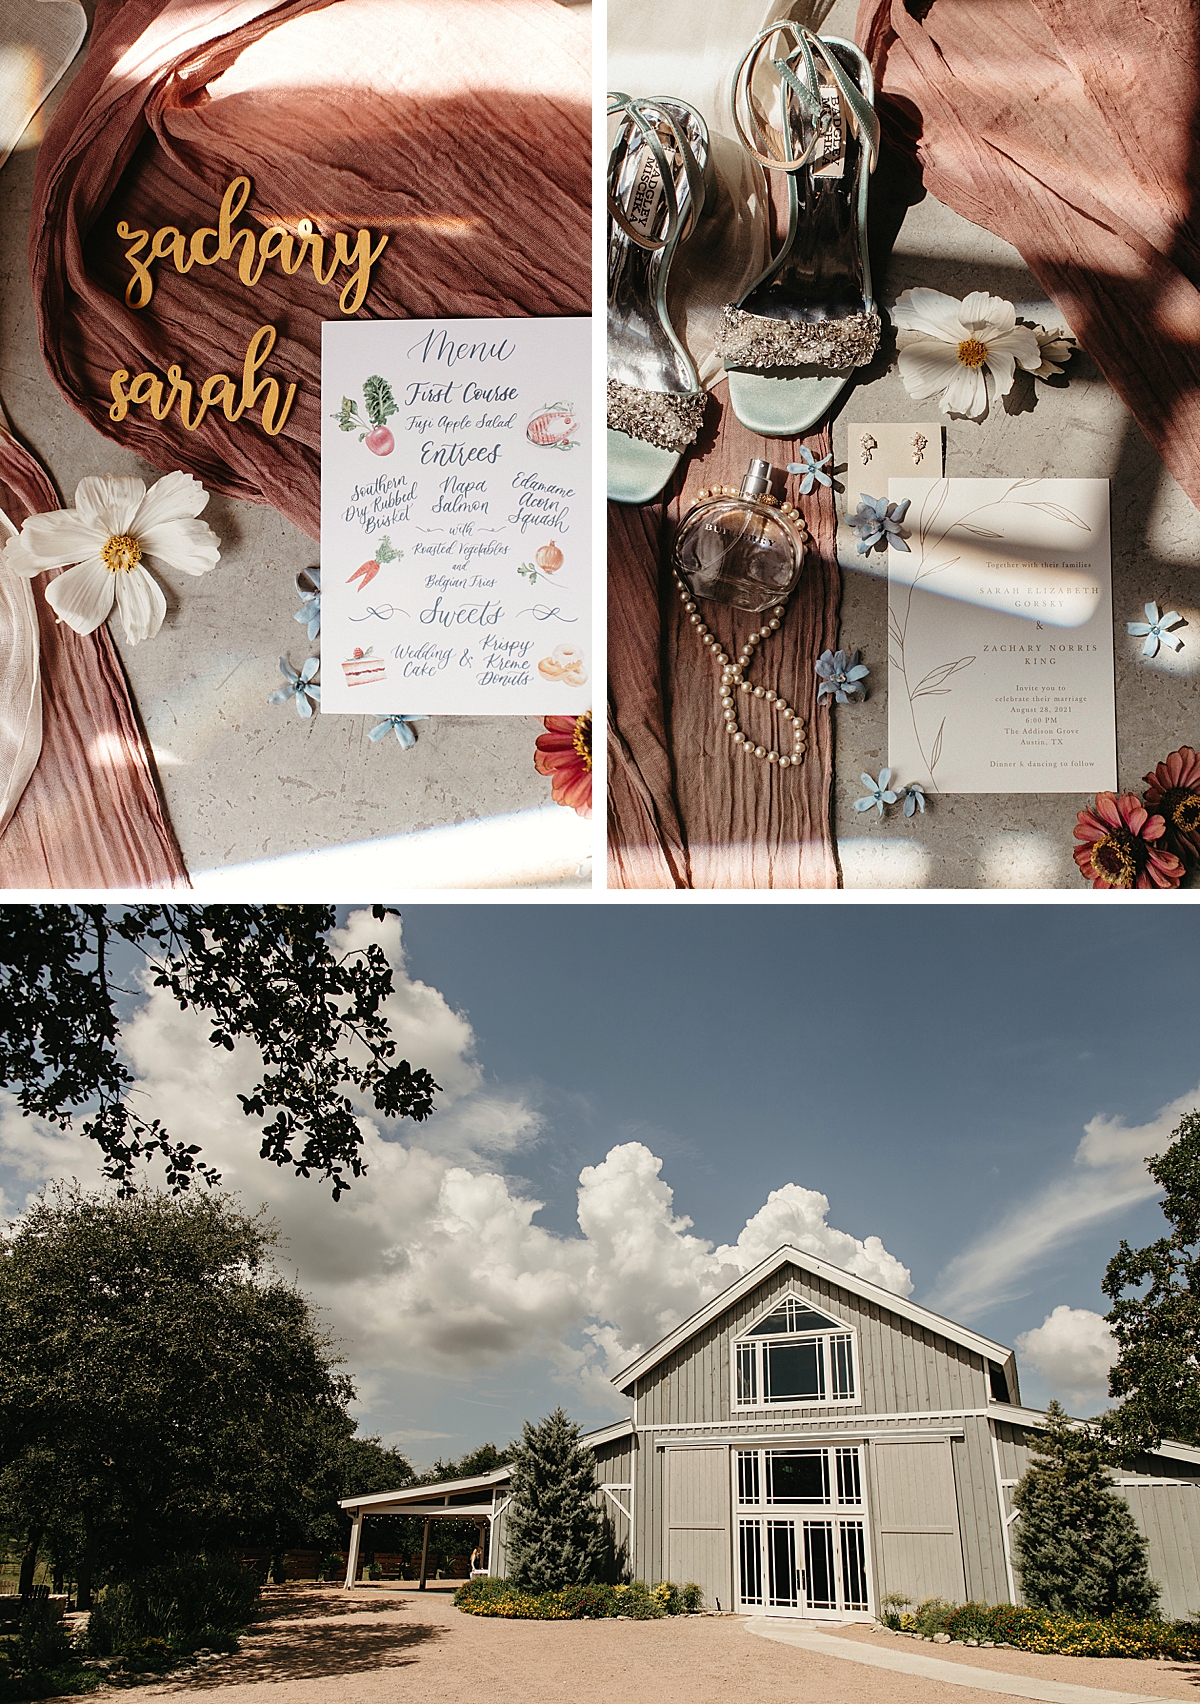 Outdoor wedding ceremony at The Addison Grove | Owl & Envelope | Custom Wedding Stationery and Signage | fall wedding, colorful fall wedding, The Addison Grove | via owlandenvelope.com